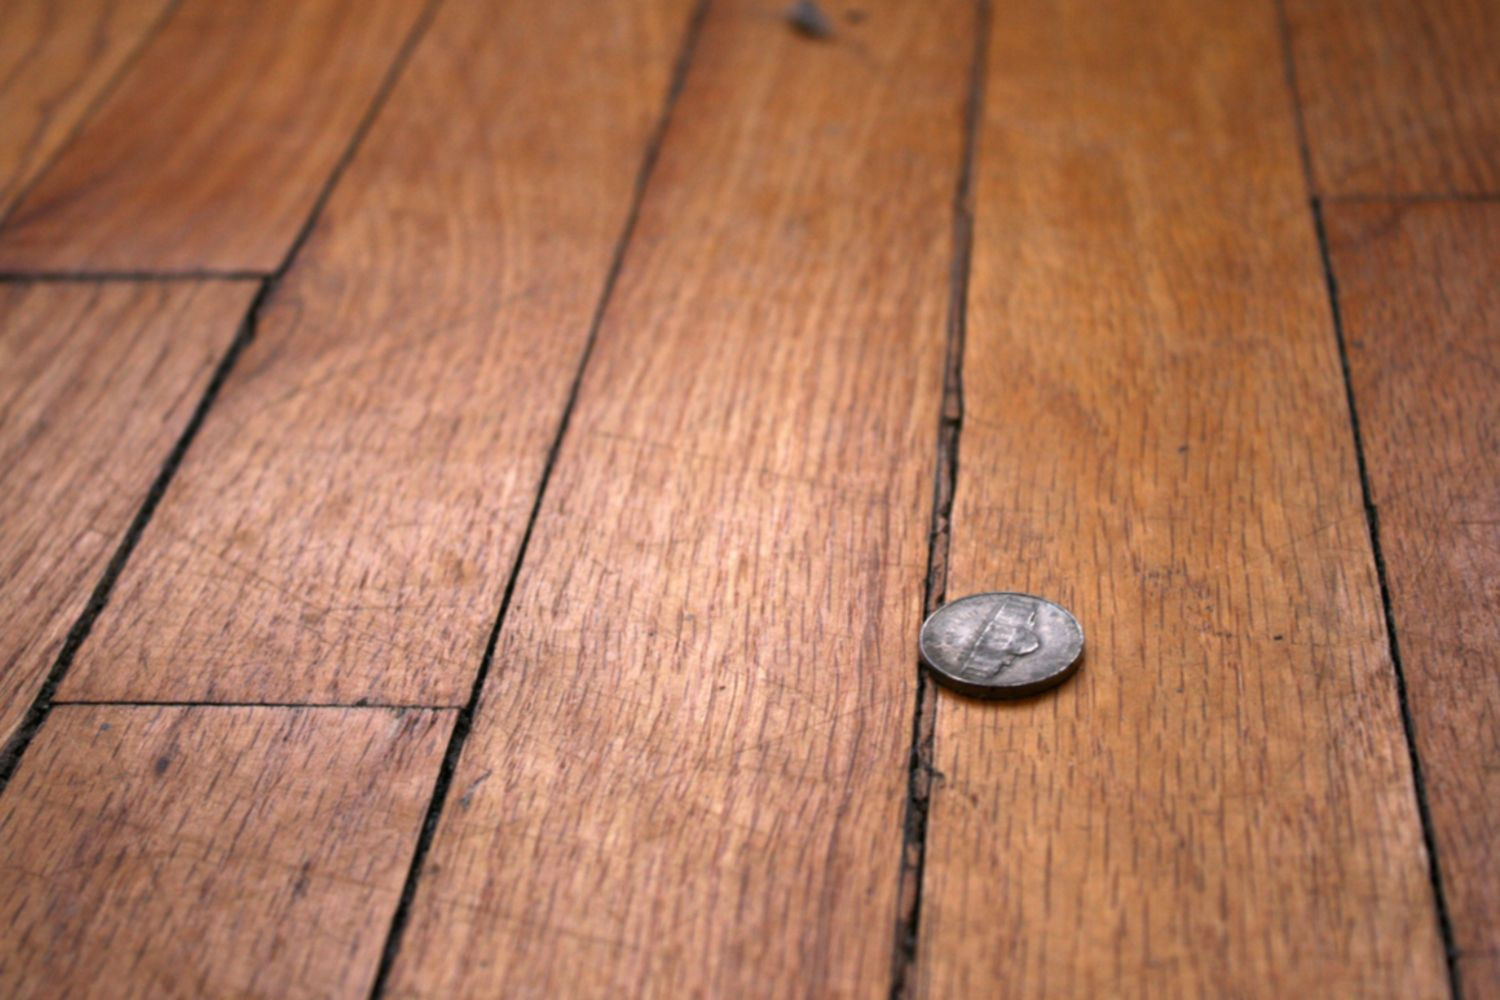 Refinishing Hardwood Floors Filling Gaps Of How to Repair Gaps Between Floorboards Inside Wood Floor with Gaps Between Boards 1500 X 1000 56a49eb25f9b58b7d0d7df8d